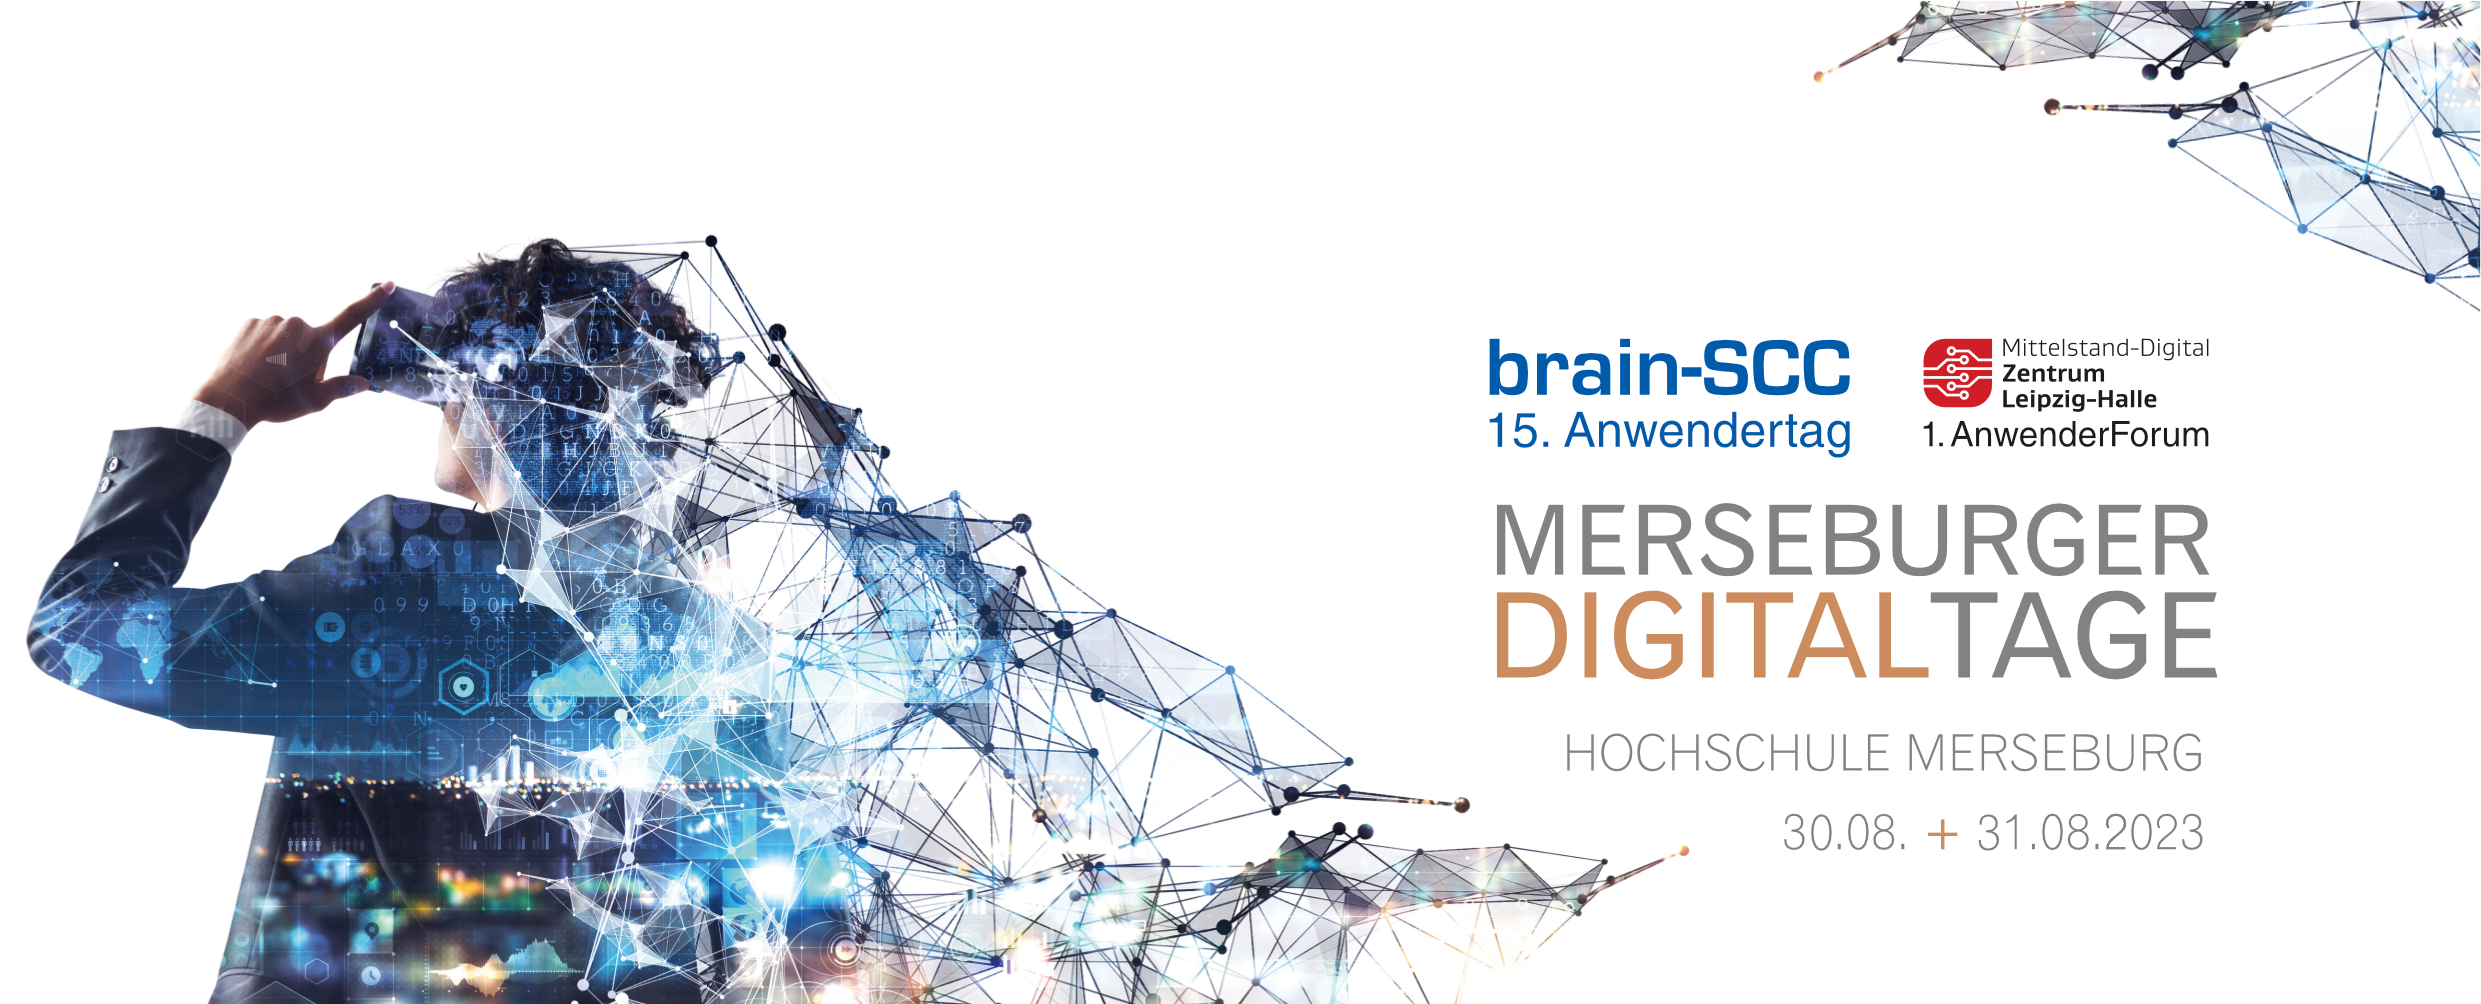 Einleitungsbild mit Informationen zu den Merseburger Digitaltagen 2023